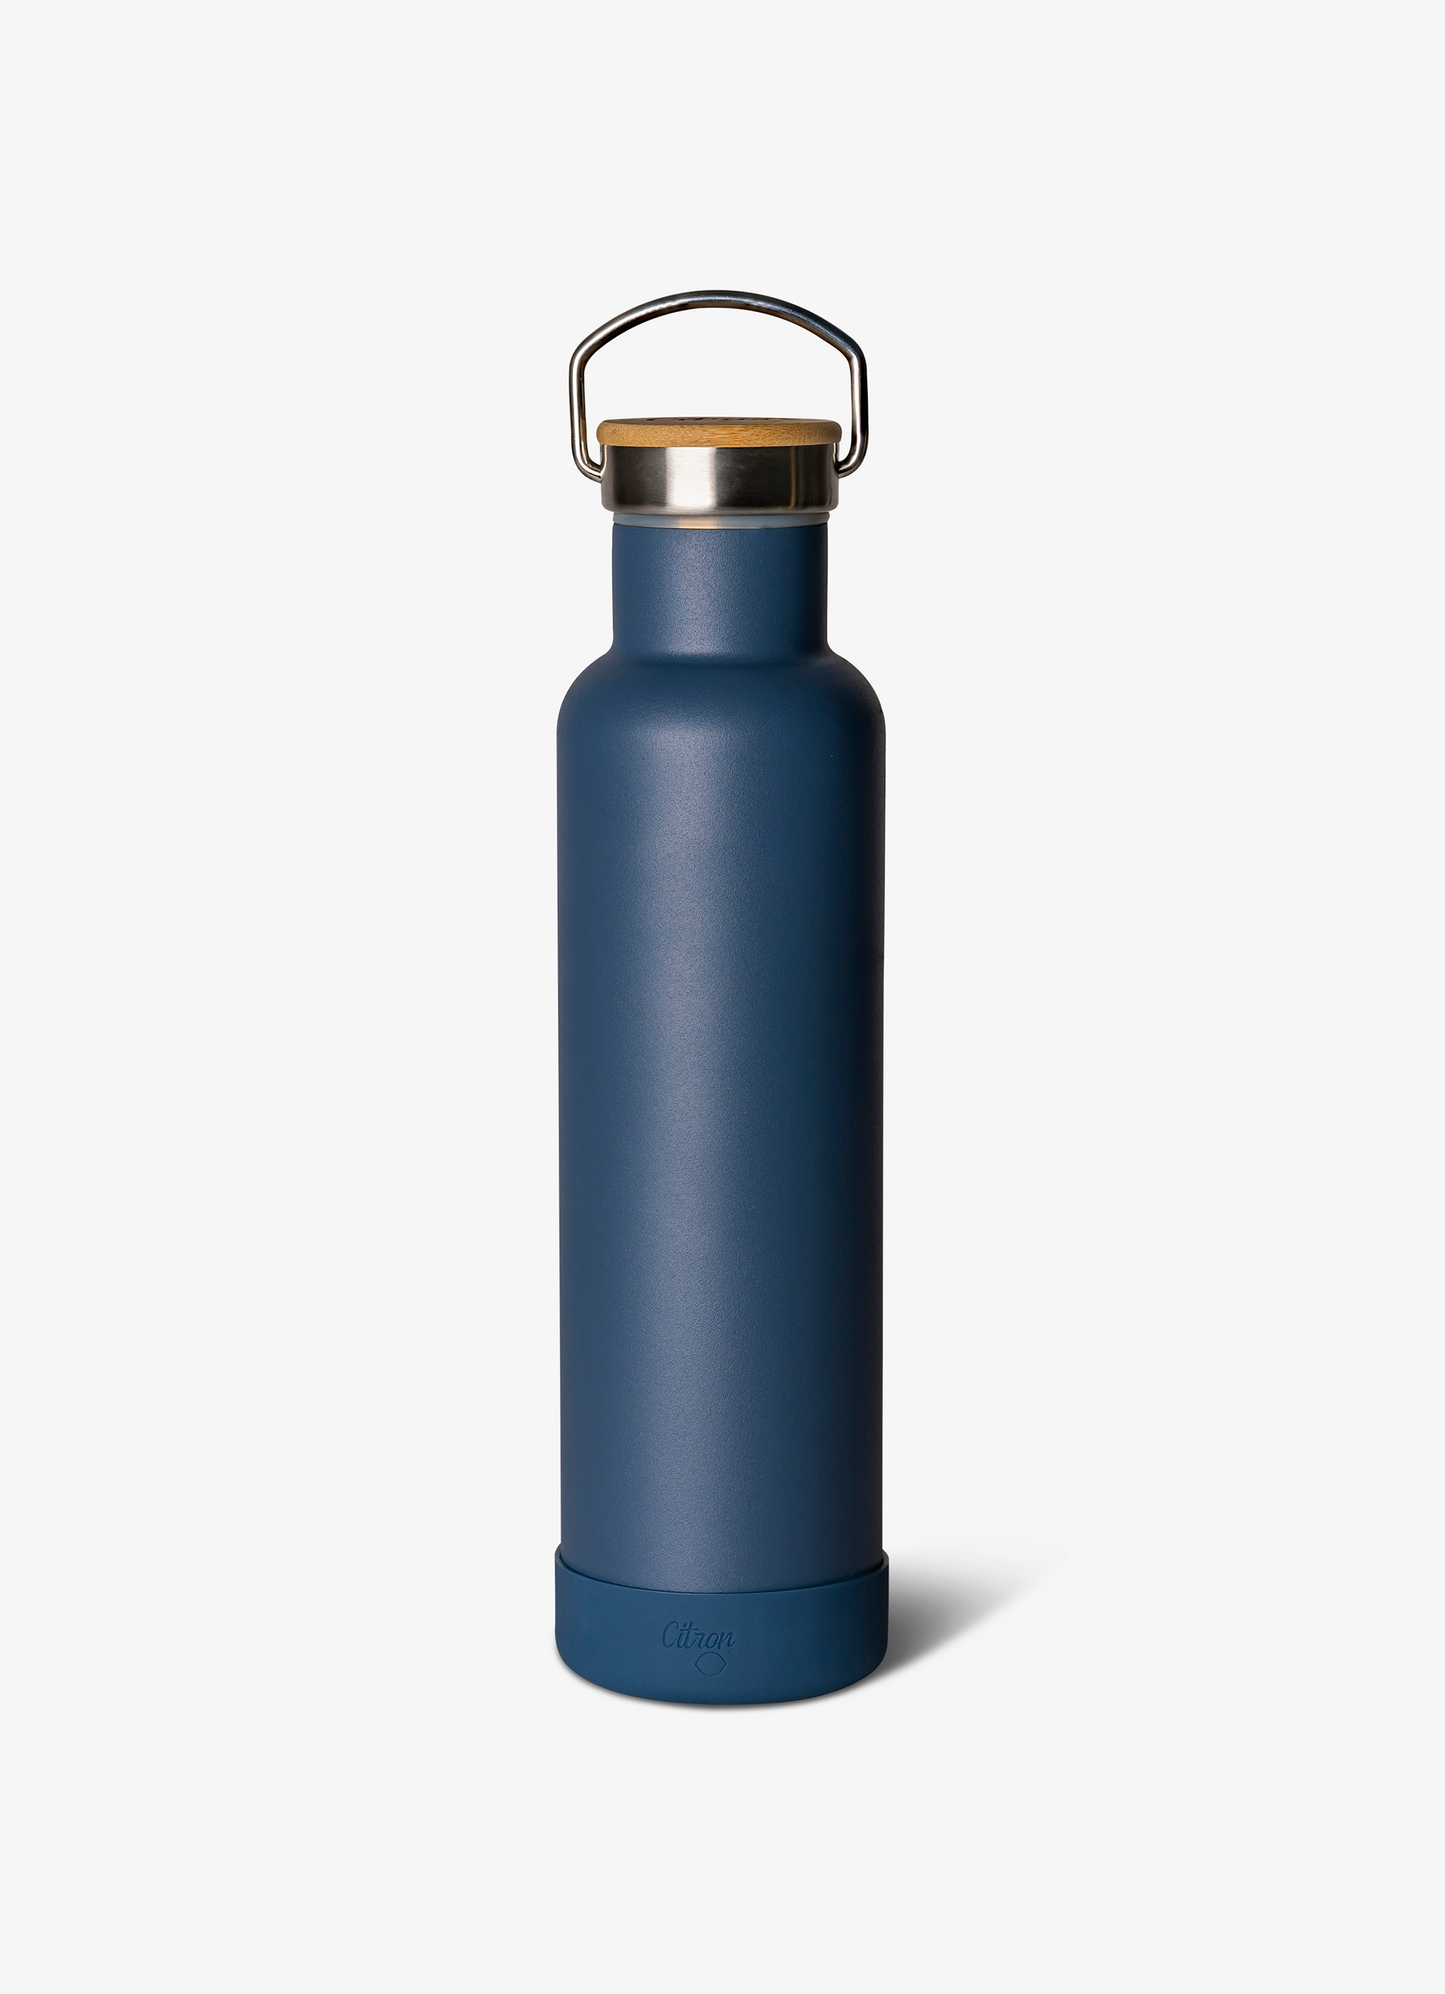 زجاجة مياه - بسعة 750 مل - أزرق مترب